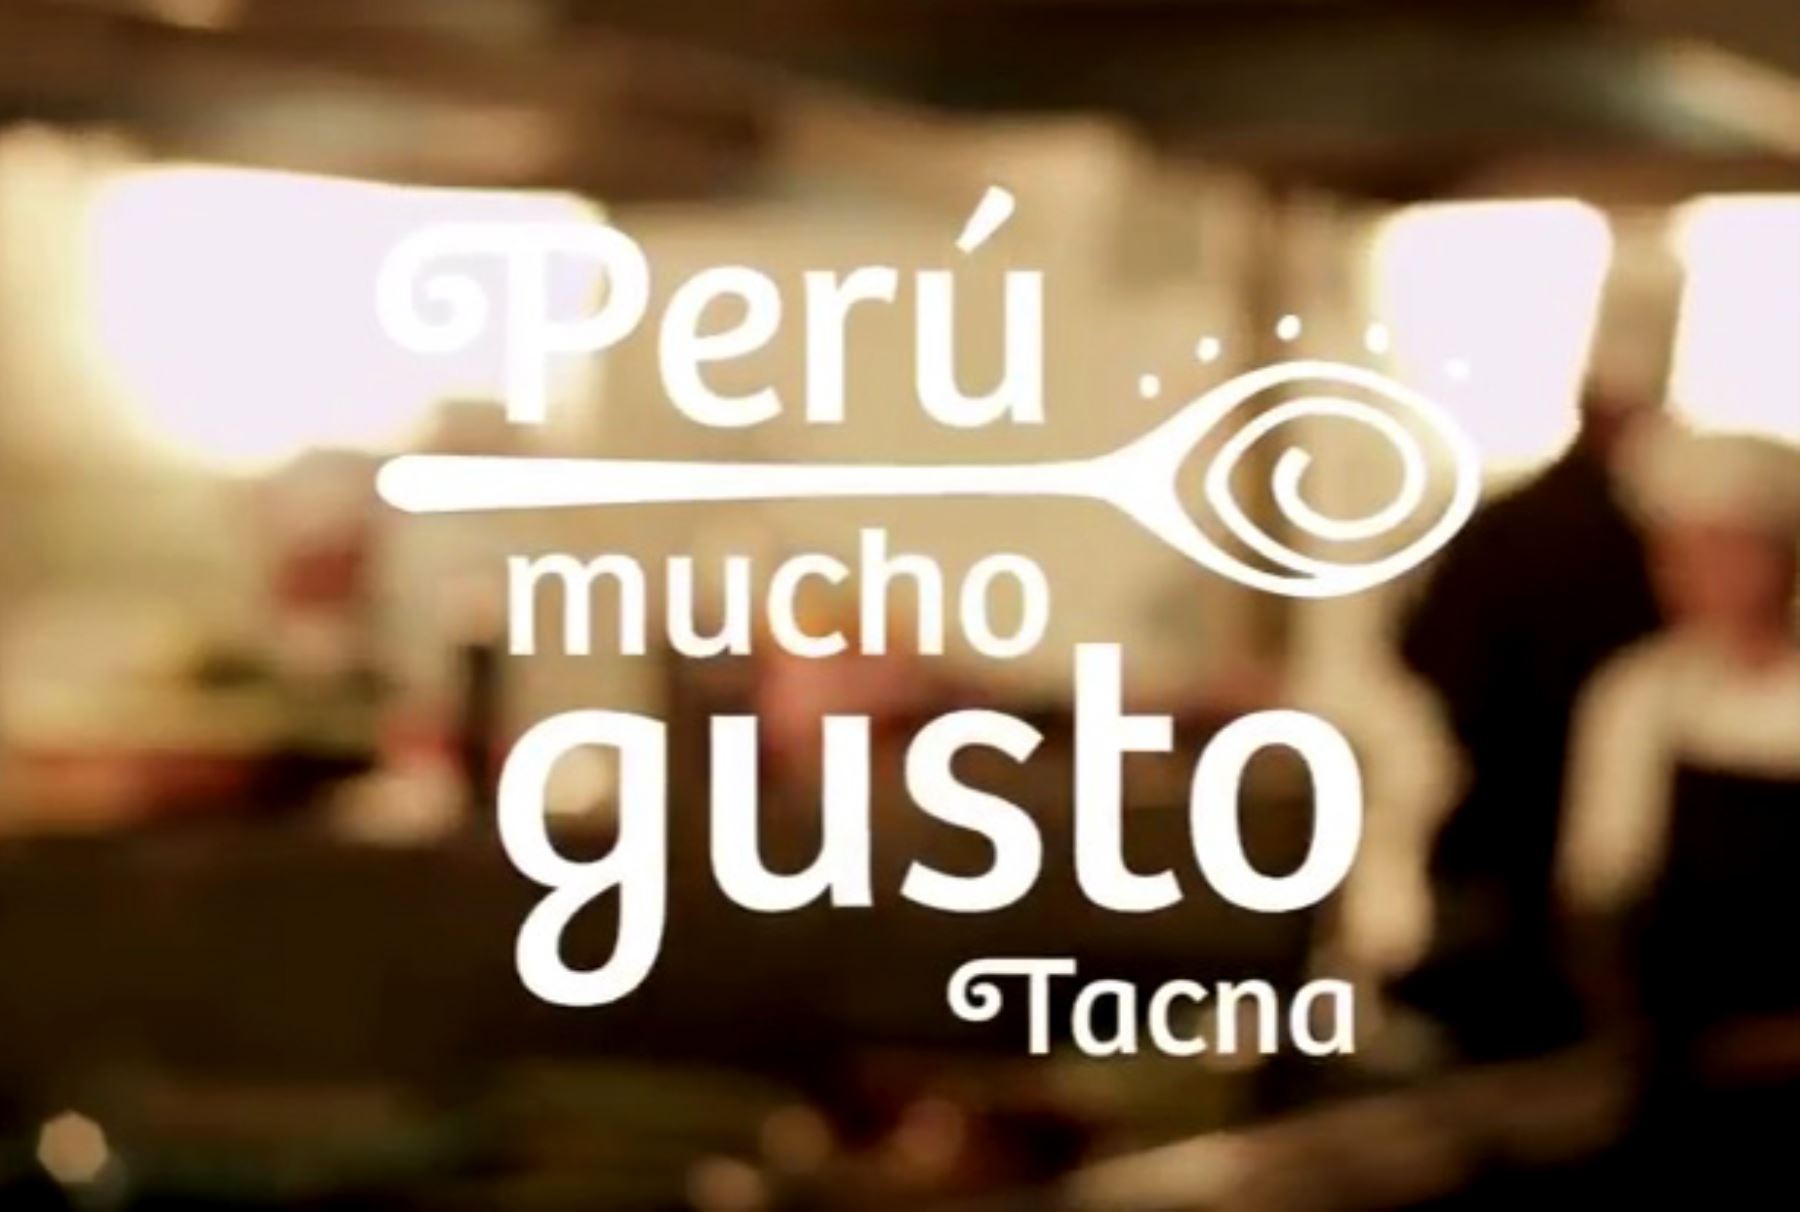 Una afluencia de más de 30,000 visitantes, de los cuales el 15% son turistas chilenos, espera este año la ciudad de Tacna para la feria gastronómica “Perú, Mucho Gusto”, que se realizará desde este viernes 29 de abril hasta el lunes 1 de mayo, informó PromPerú, organizador de esta actividad.